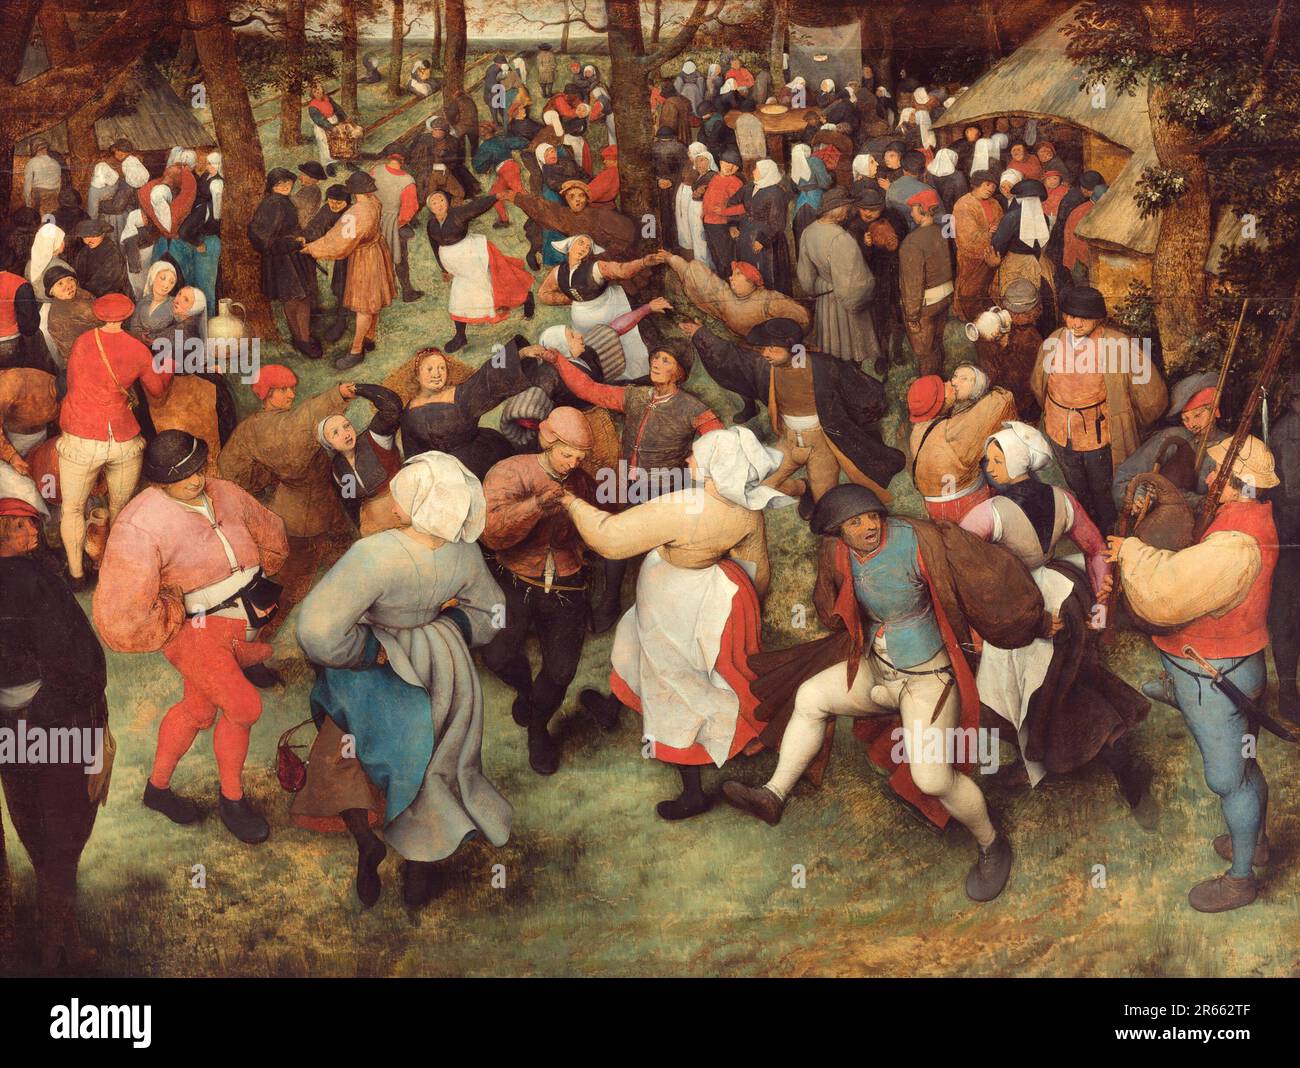 La Danza nuziale dipinta dal pittore rinascimentale olandese Pieter Breughel il Vecchio nel 1566. Breughel è stato il pittore più importante del Rinascimento olandese e fiammingo. La sua scelta di soggetti fu influente, rifiutò ritratti e scene religiose a favore di scene locali e contadine. Foto Stock